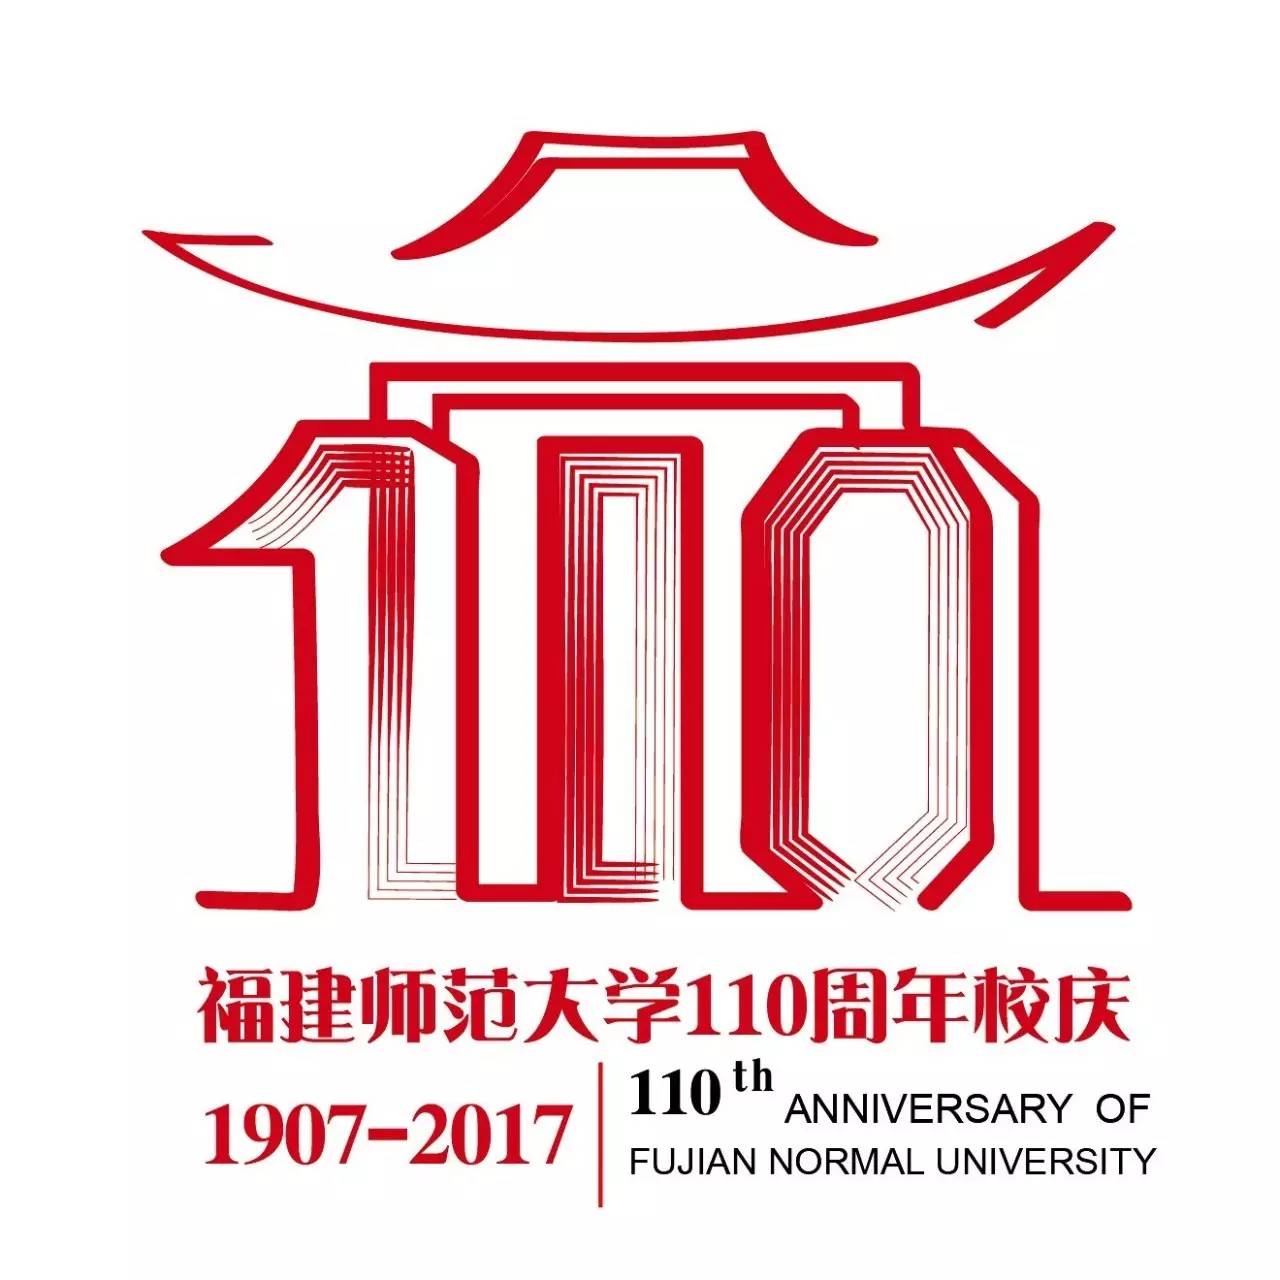 喜迎110周年校庆丨快来选出您最心仪的校庆标识!